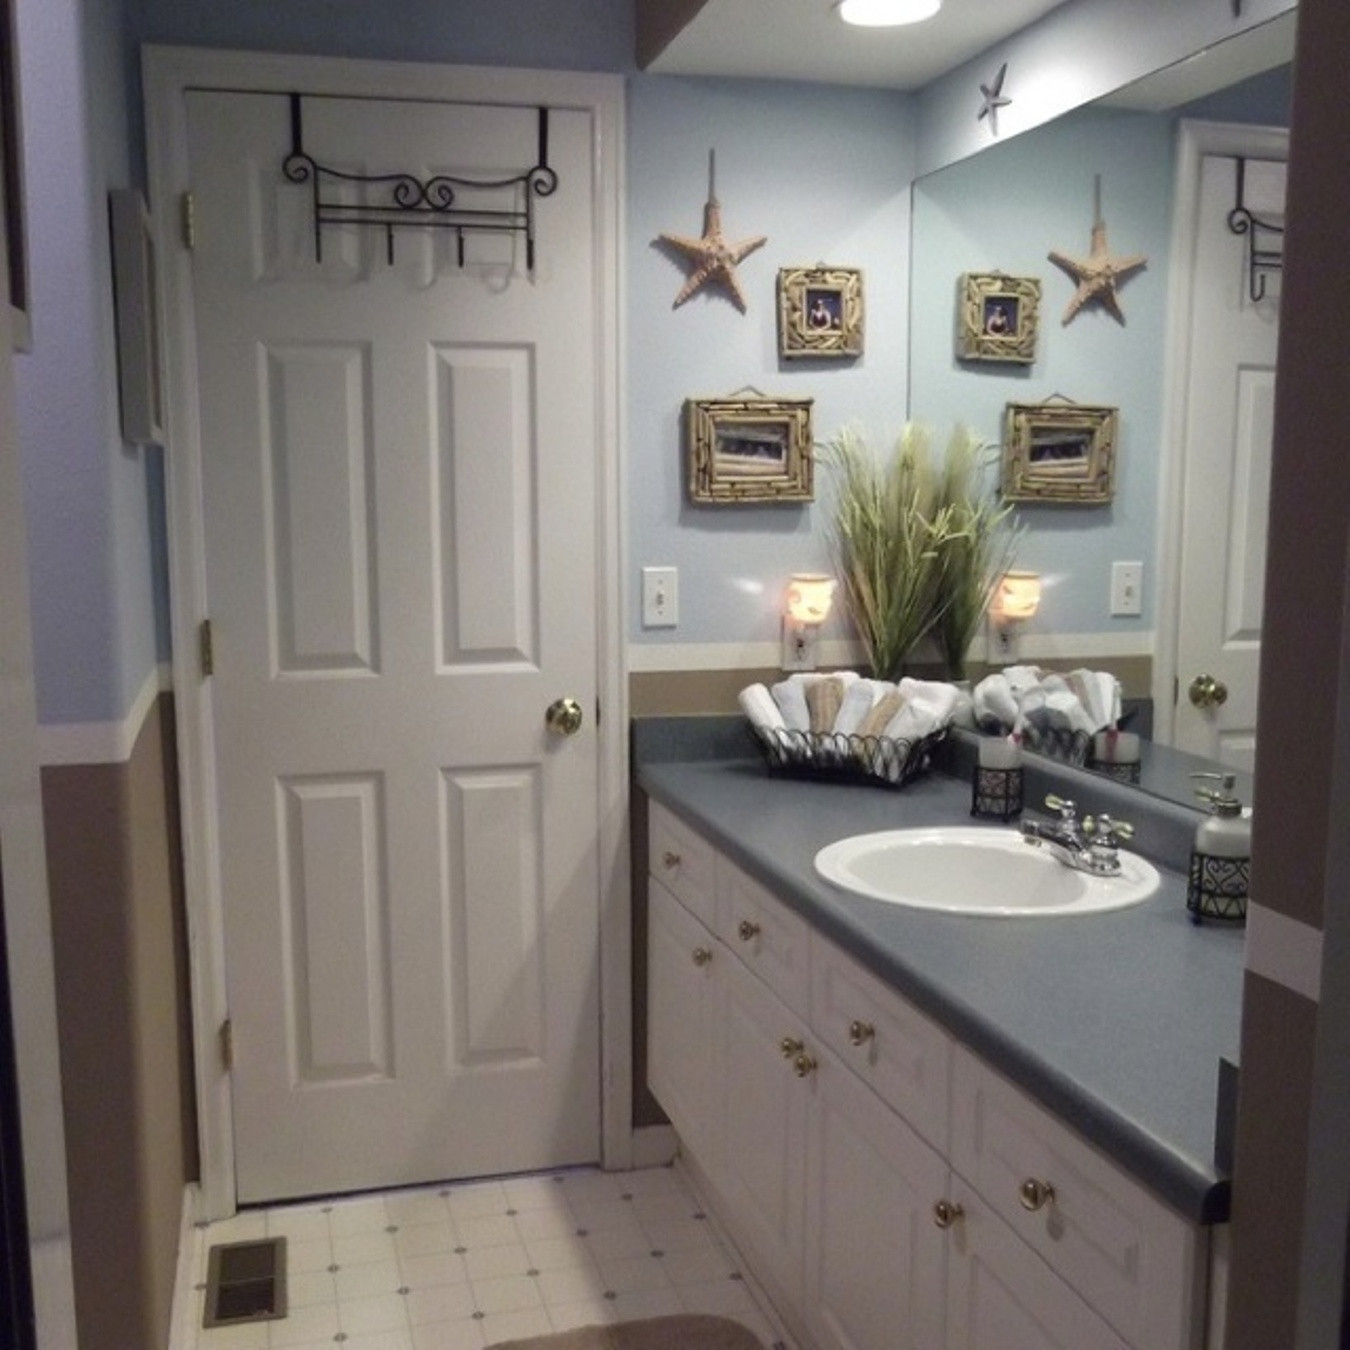 Nautical Bathroom Decor Ideas
 85 Ideas about Nautical Bathroom Decor TheyDesign